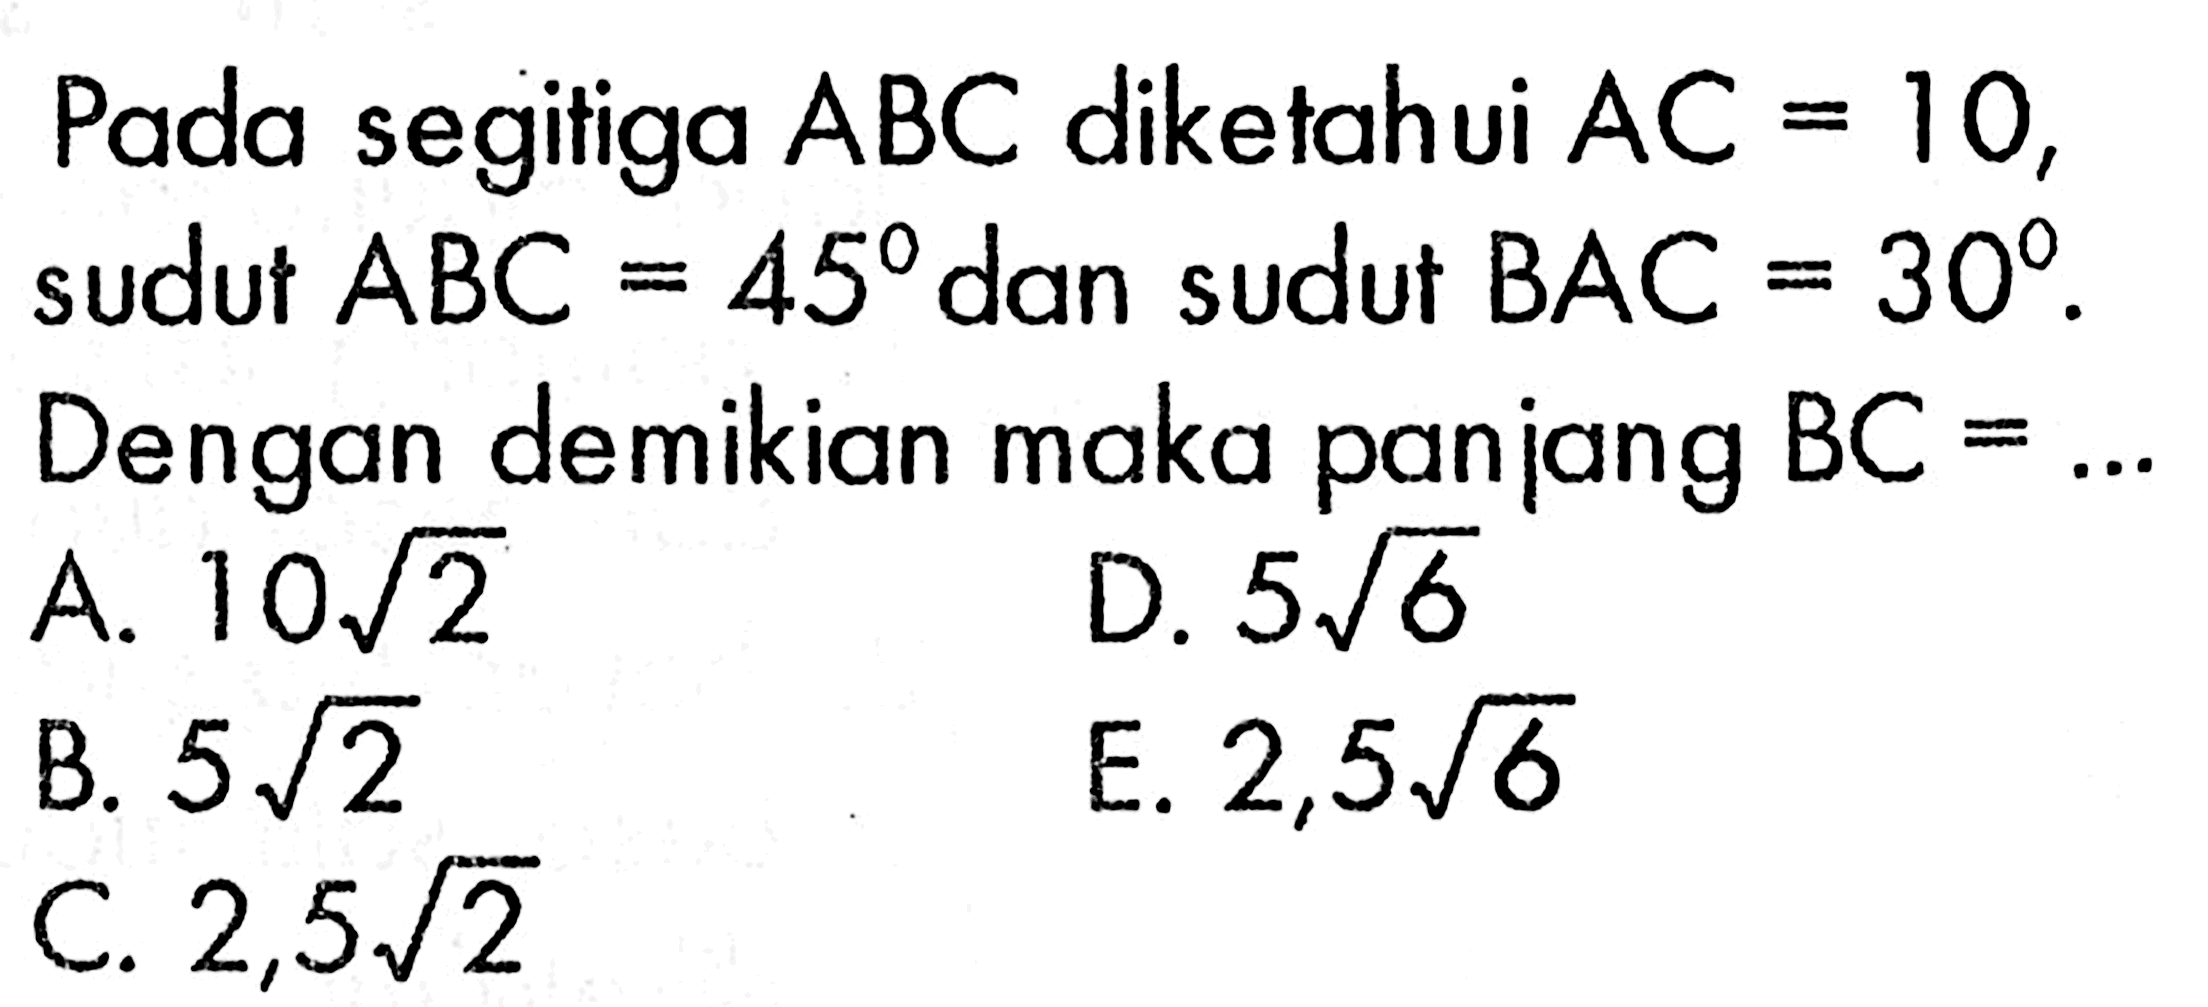 Pada segitiga ABC diketahui AC 10, sudut ABC = 45 dan sudut BAC=30. Dengan demikian maka panjang BC = 